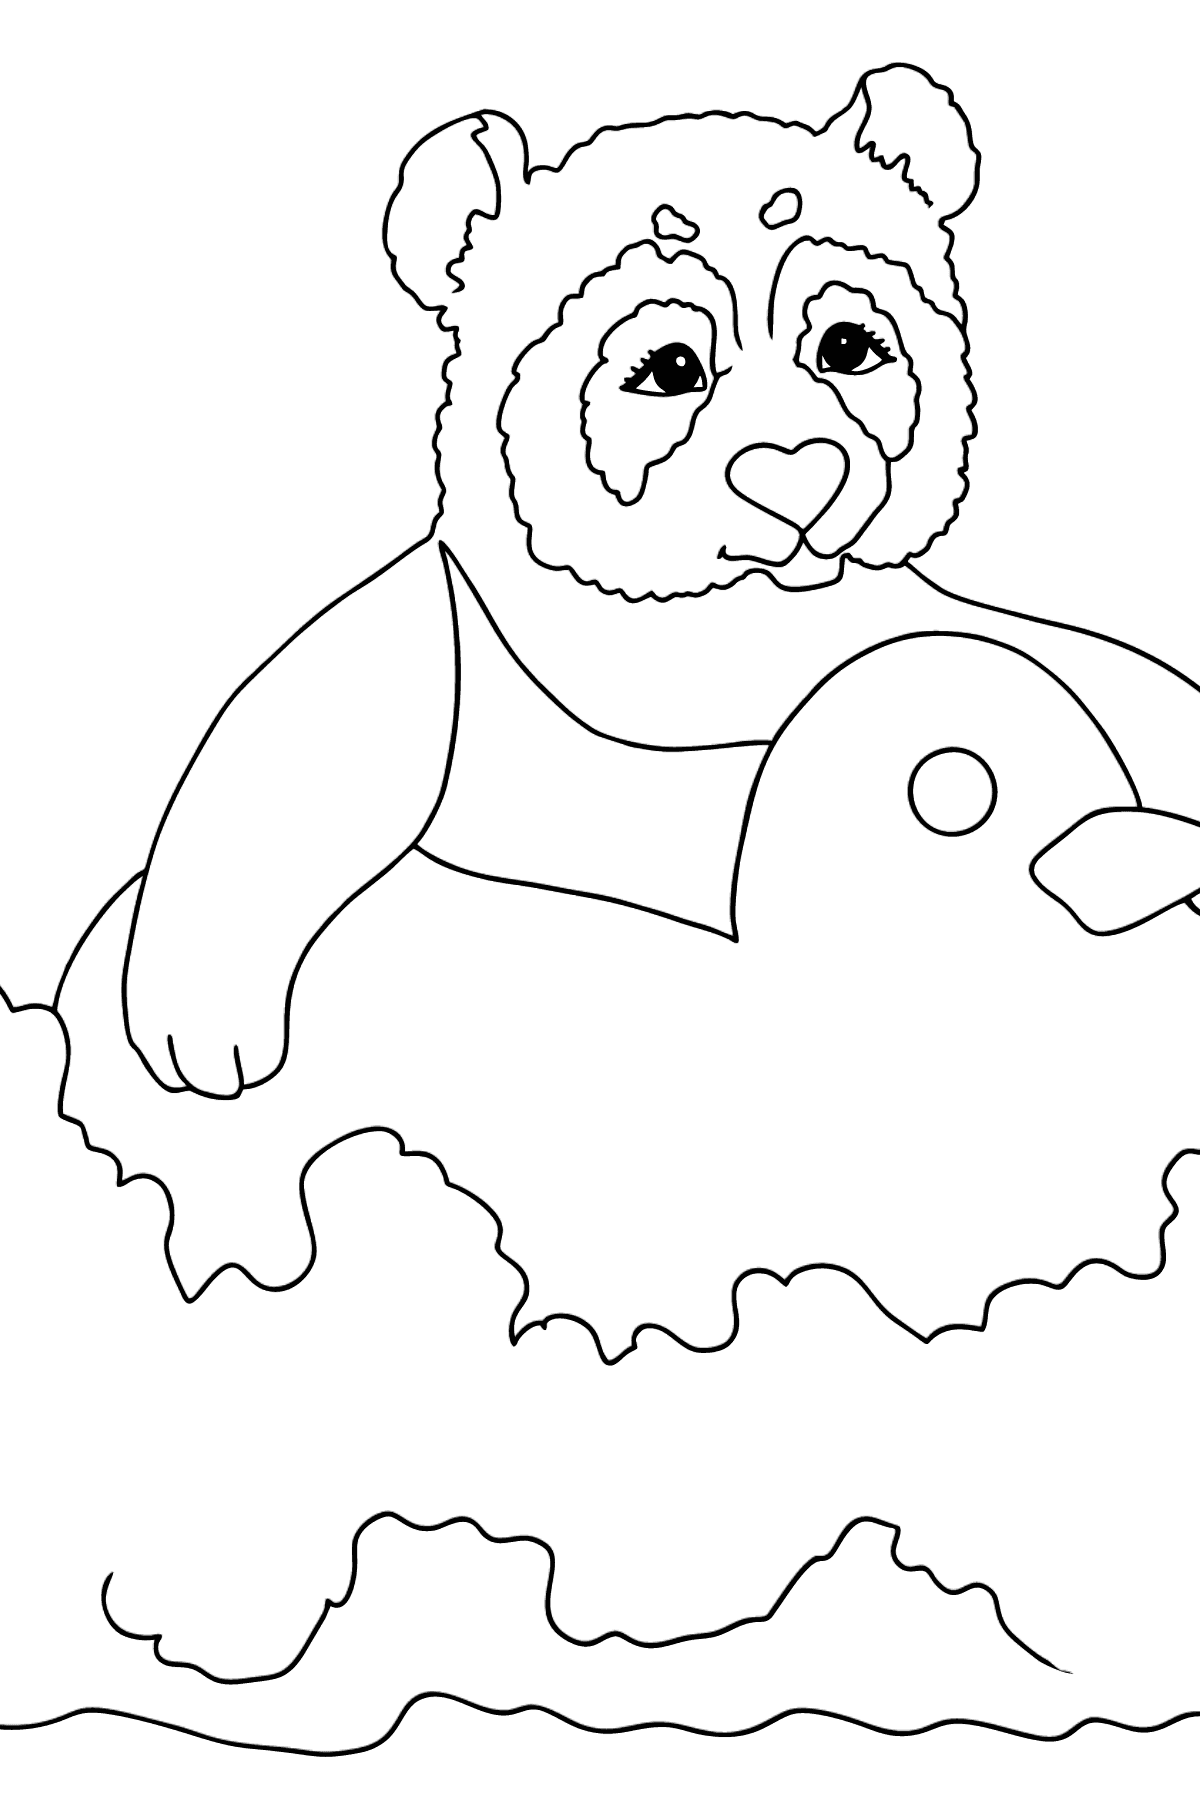 Tegning til fargelegging morsom panda (enkelt) - Tegninger til fargelegging for barn